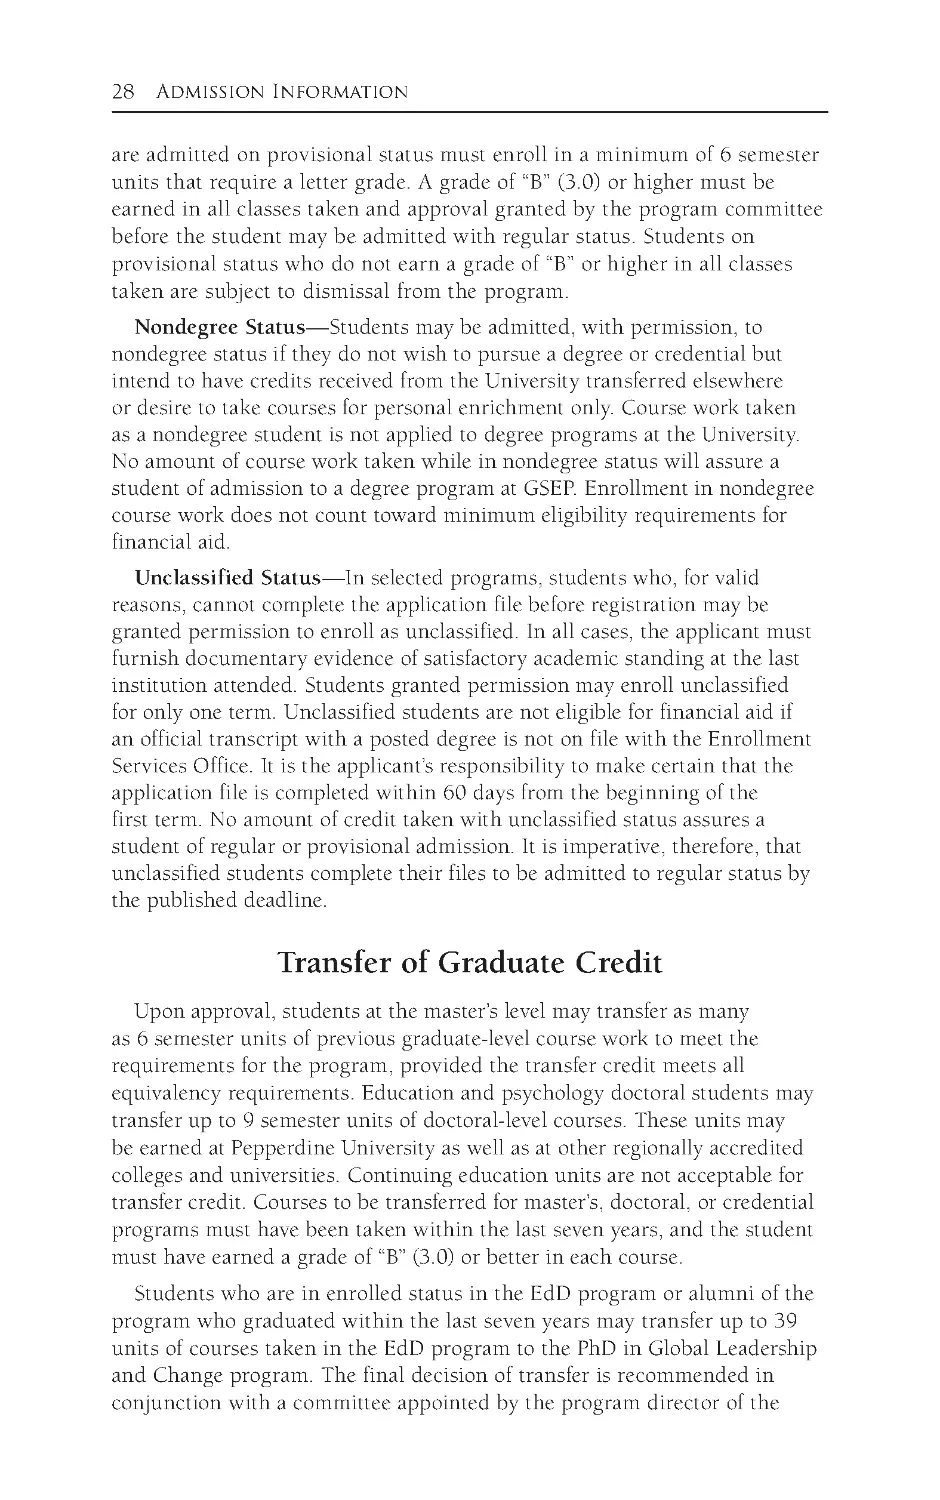 Transfer of Graduate Credit